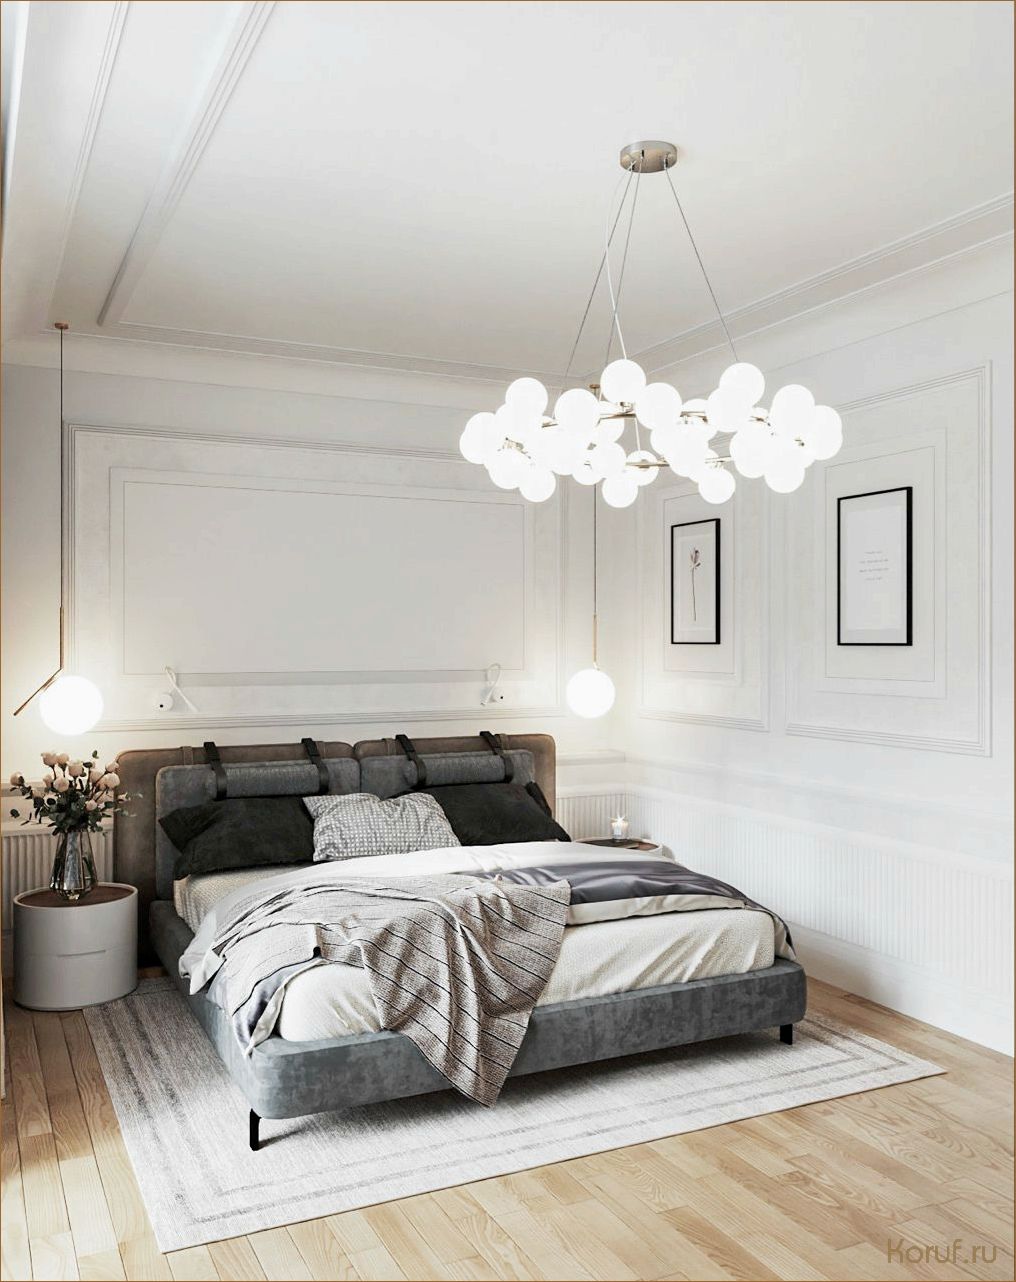 Топ-10 идей для создания уютной и комфортной спальни в отдельном помещении